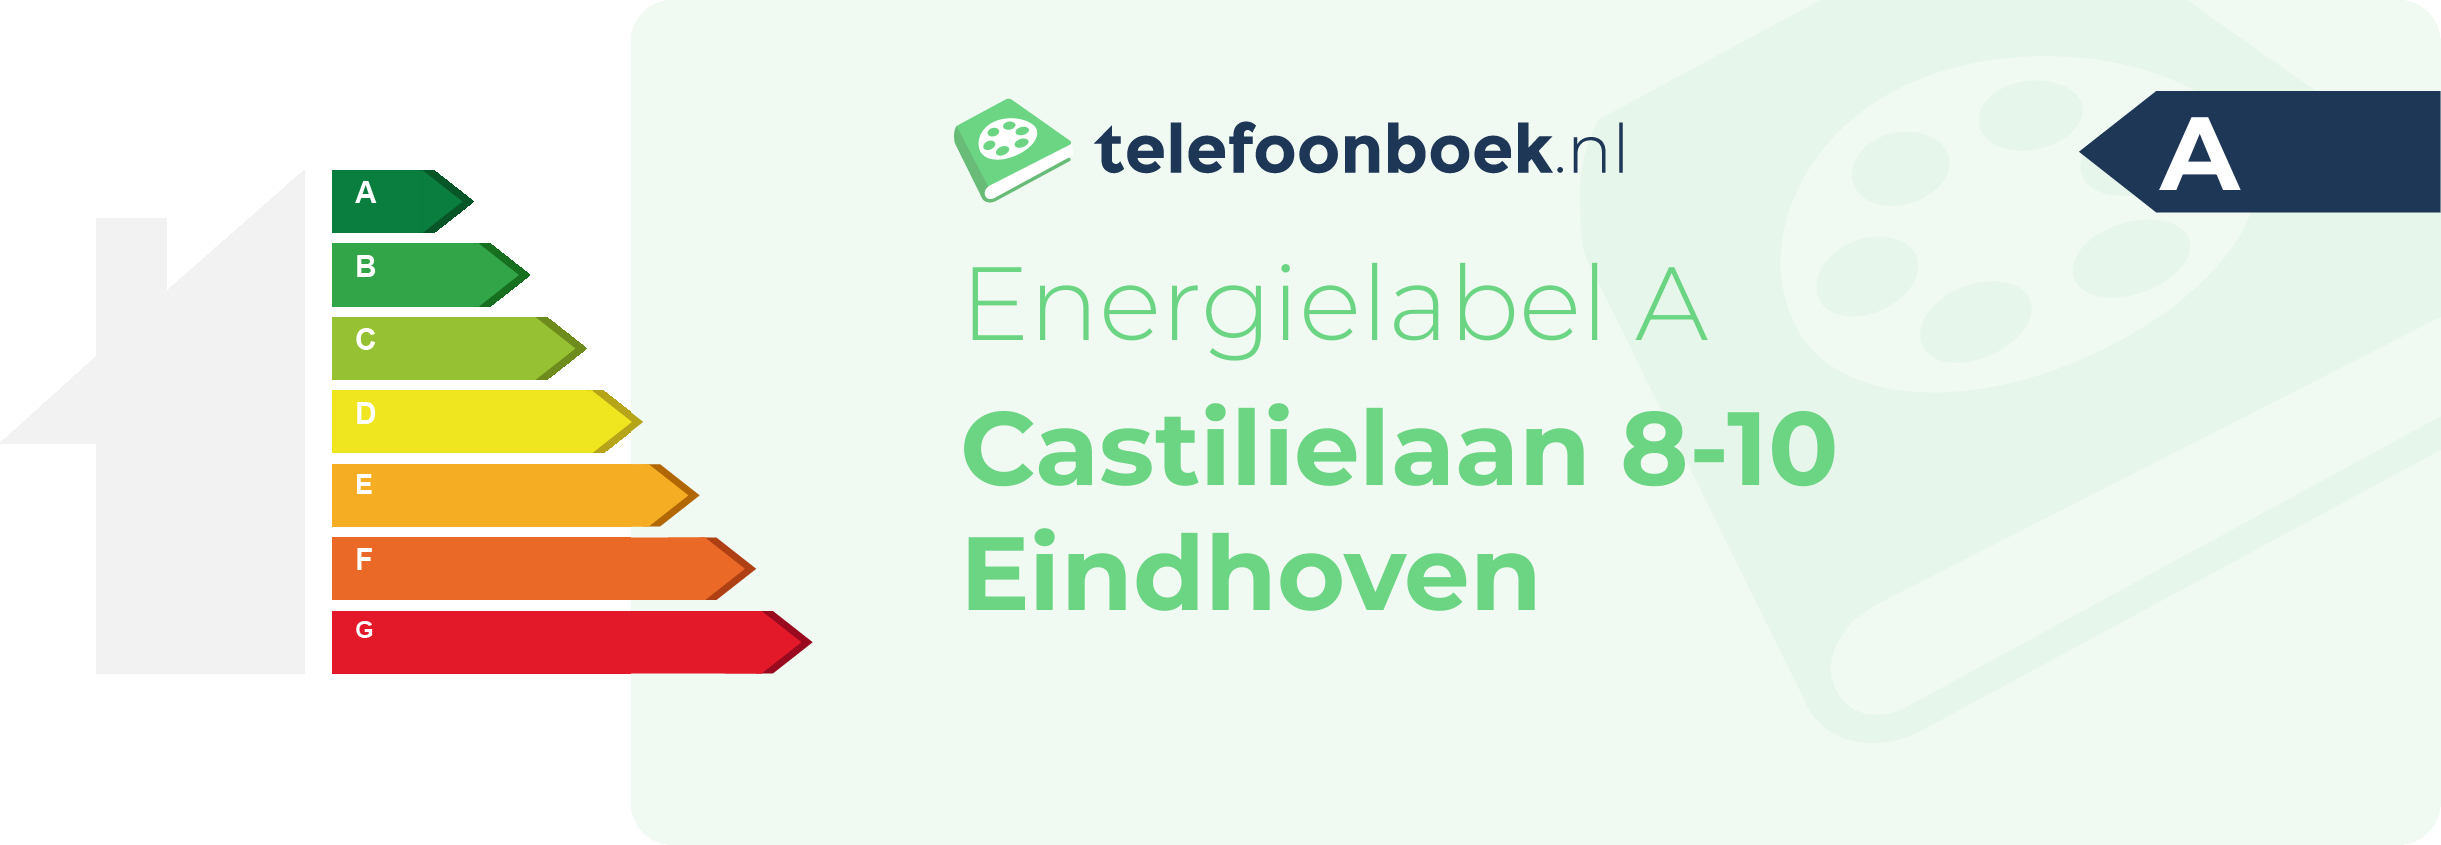 Energielabel Castilielaan 8-10 Eindhoven